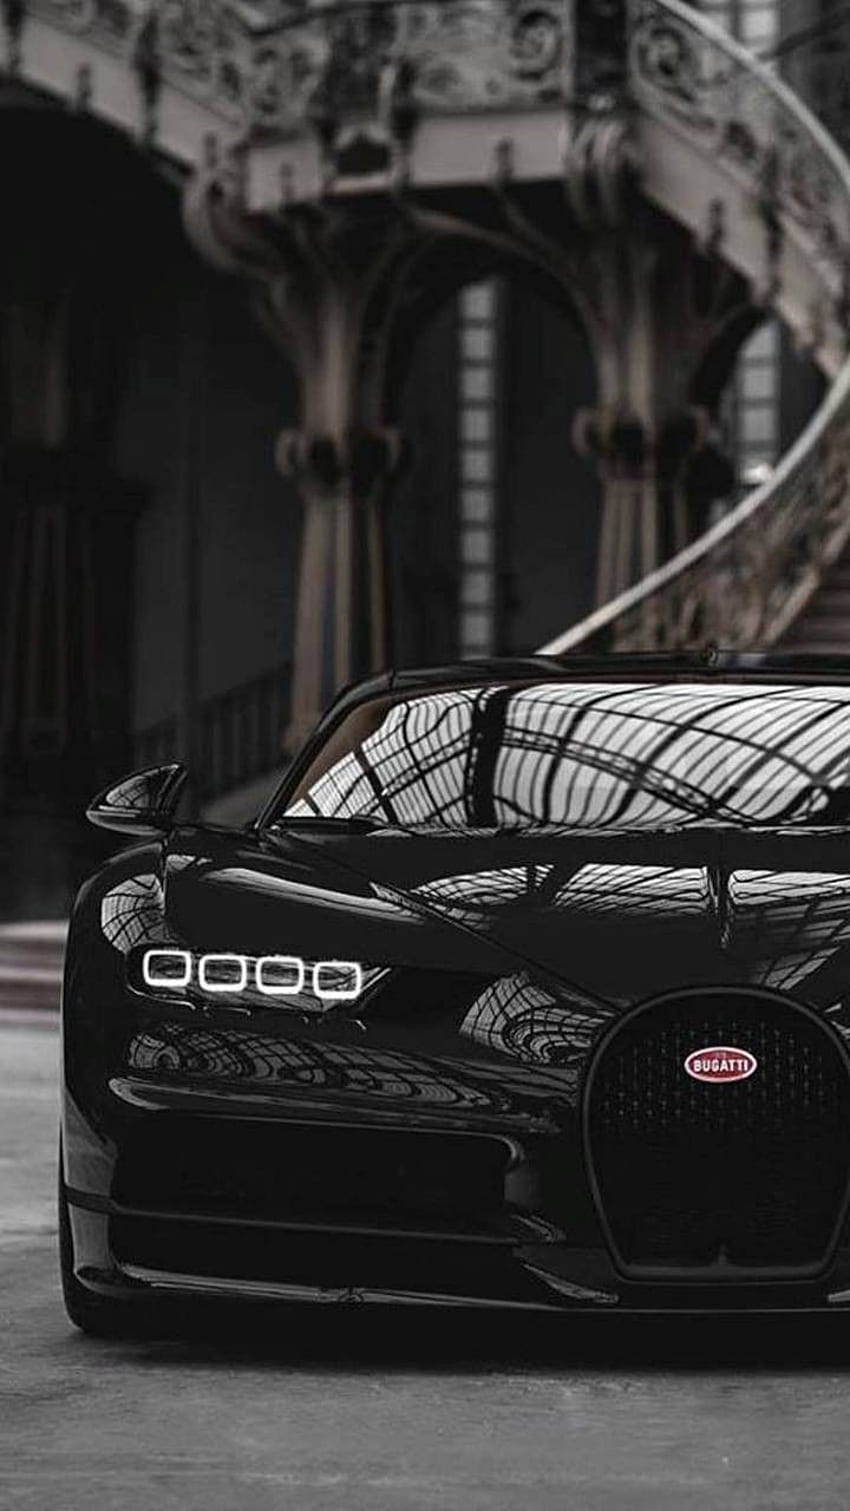 Bugatti Chiron - Bugatti Chiron For iPhone,, Black Bugatti HD phone wallpaper